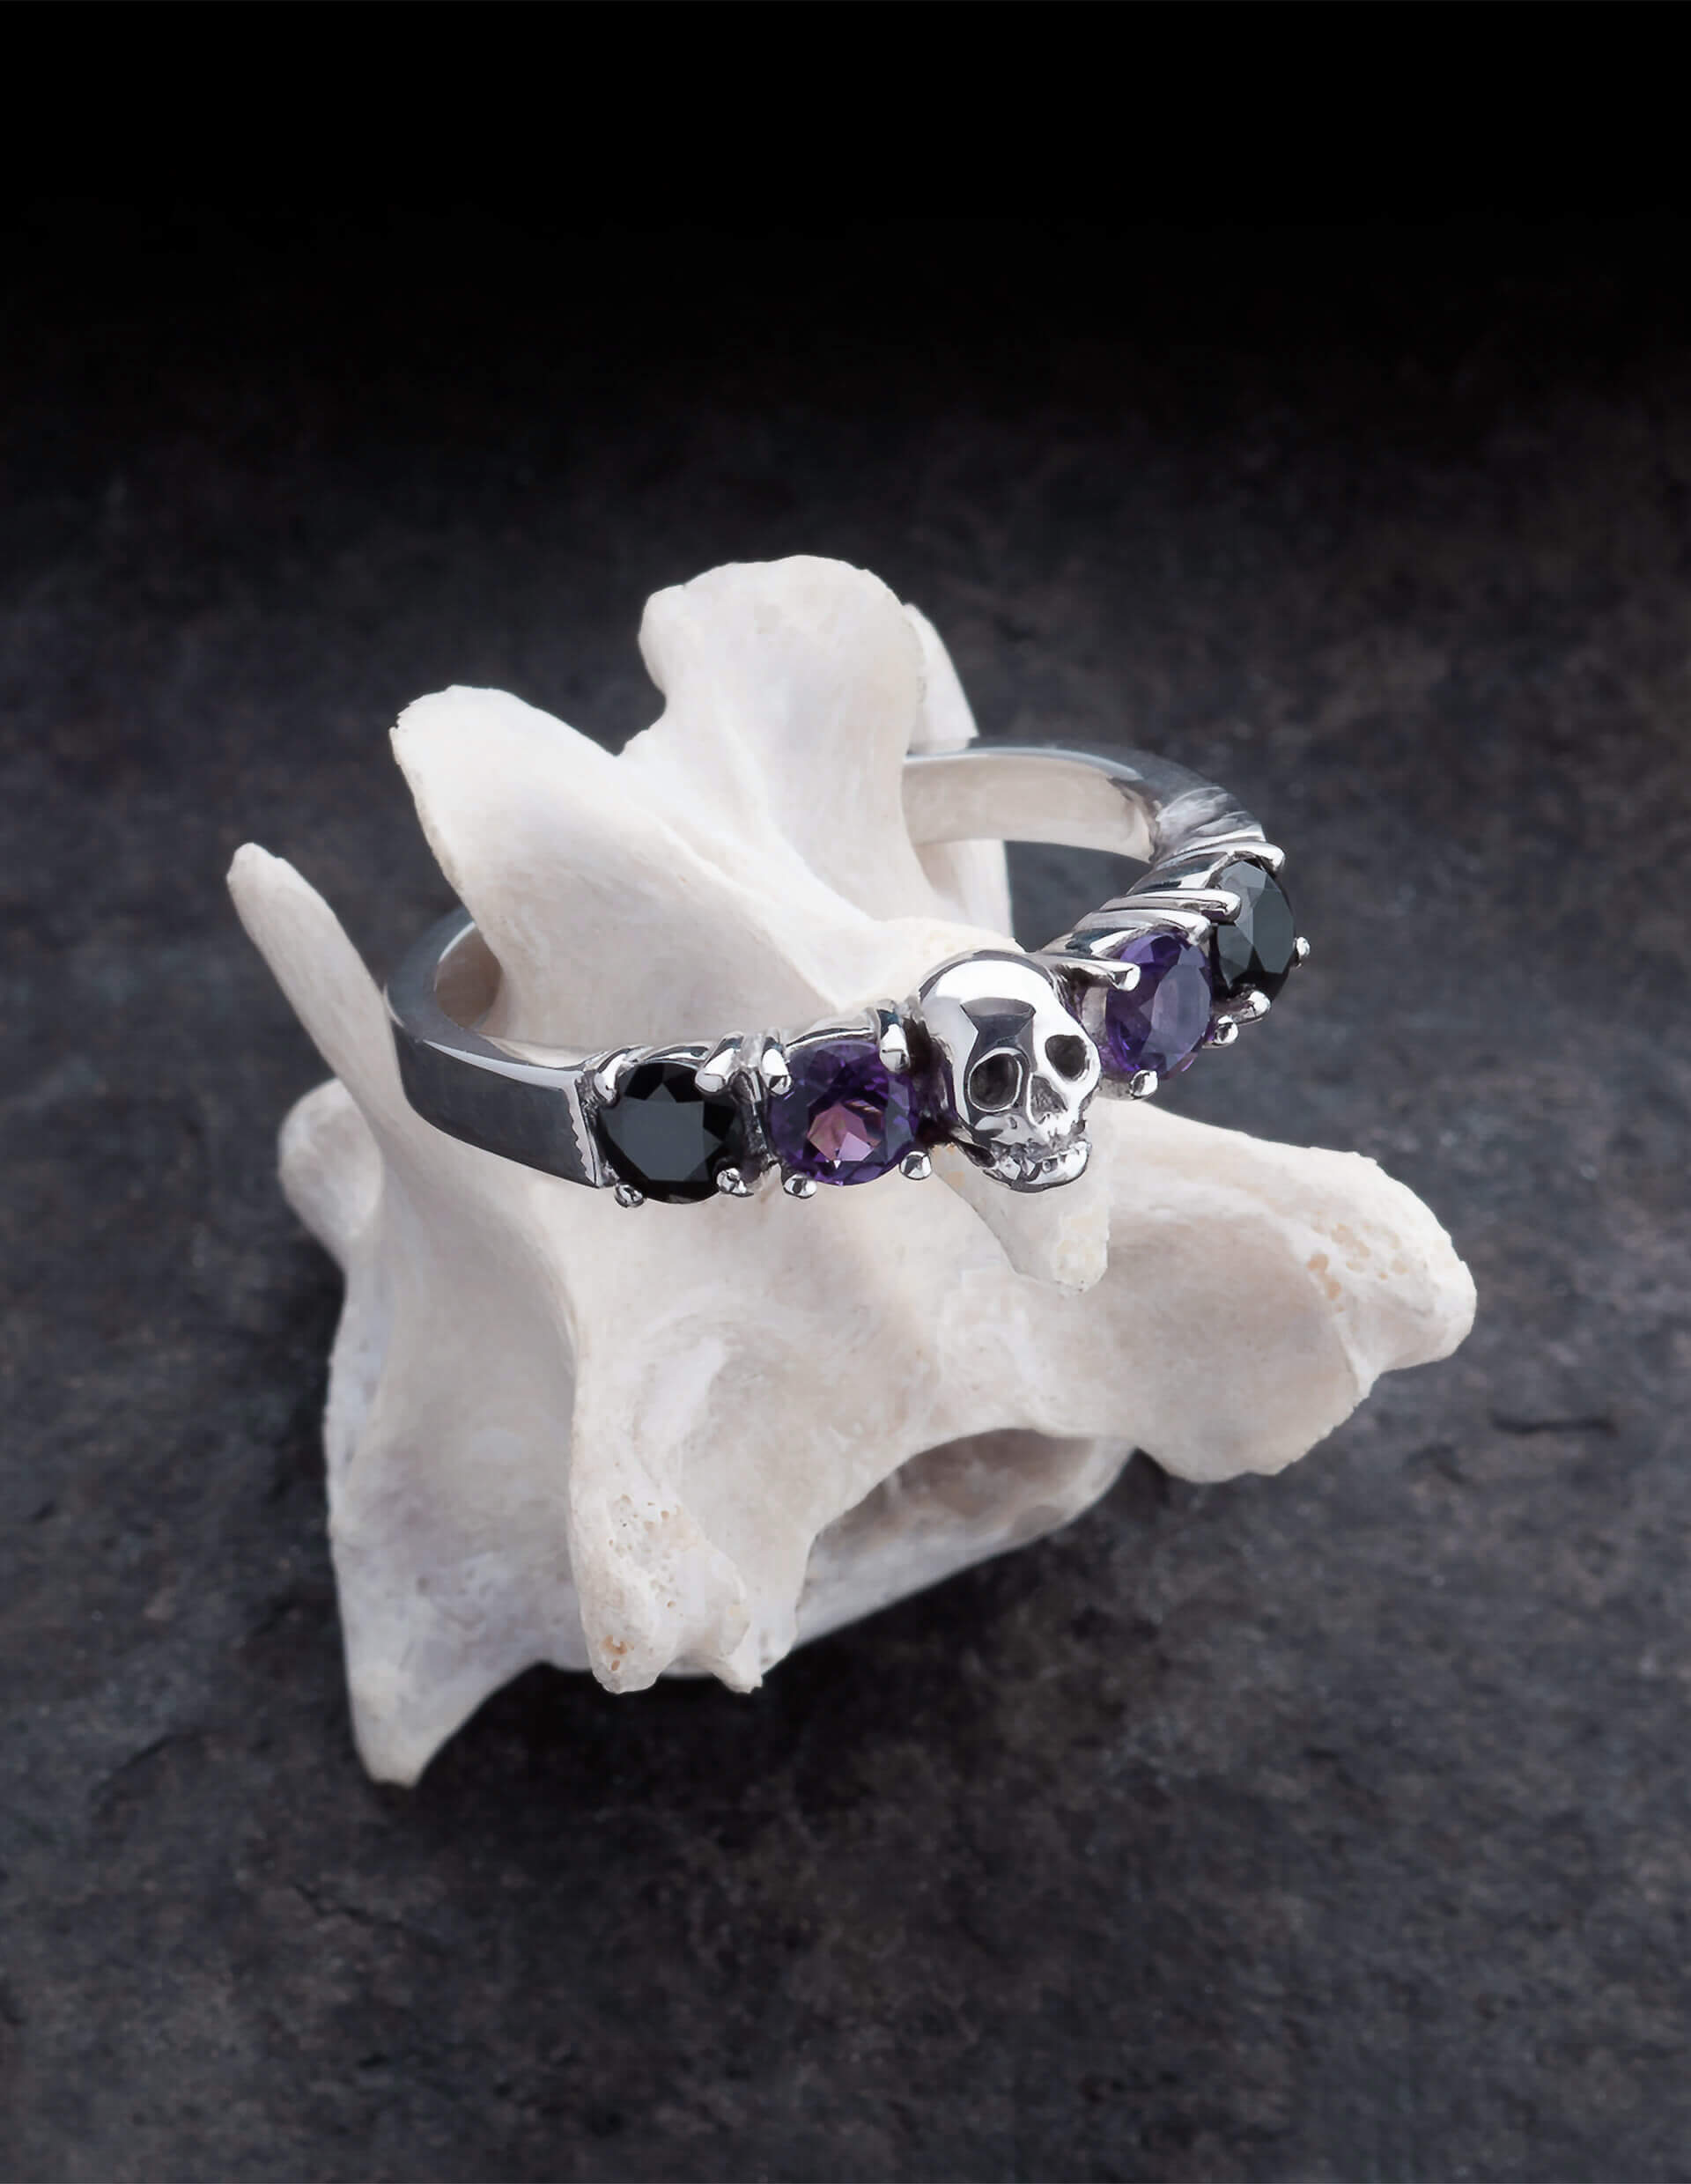 Helice ist ein prachtvoller Ehering mit einem Totenkopf umgeben von vier runden Edelsteinen. Der Ring ist aus Silber gefertigt in der Goldschmiede Kipkalinka. Der Ring liegt auf einem Knochen.